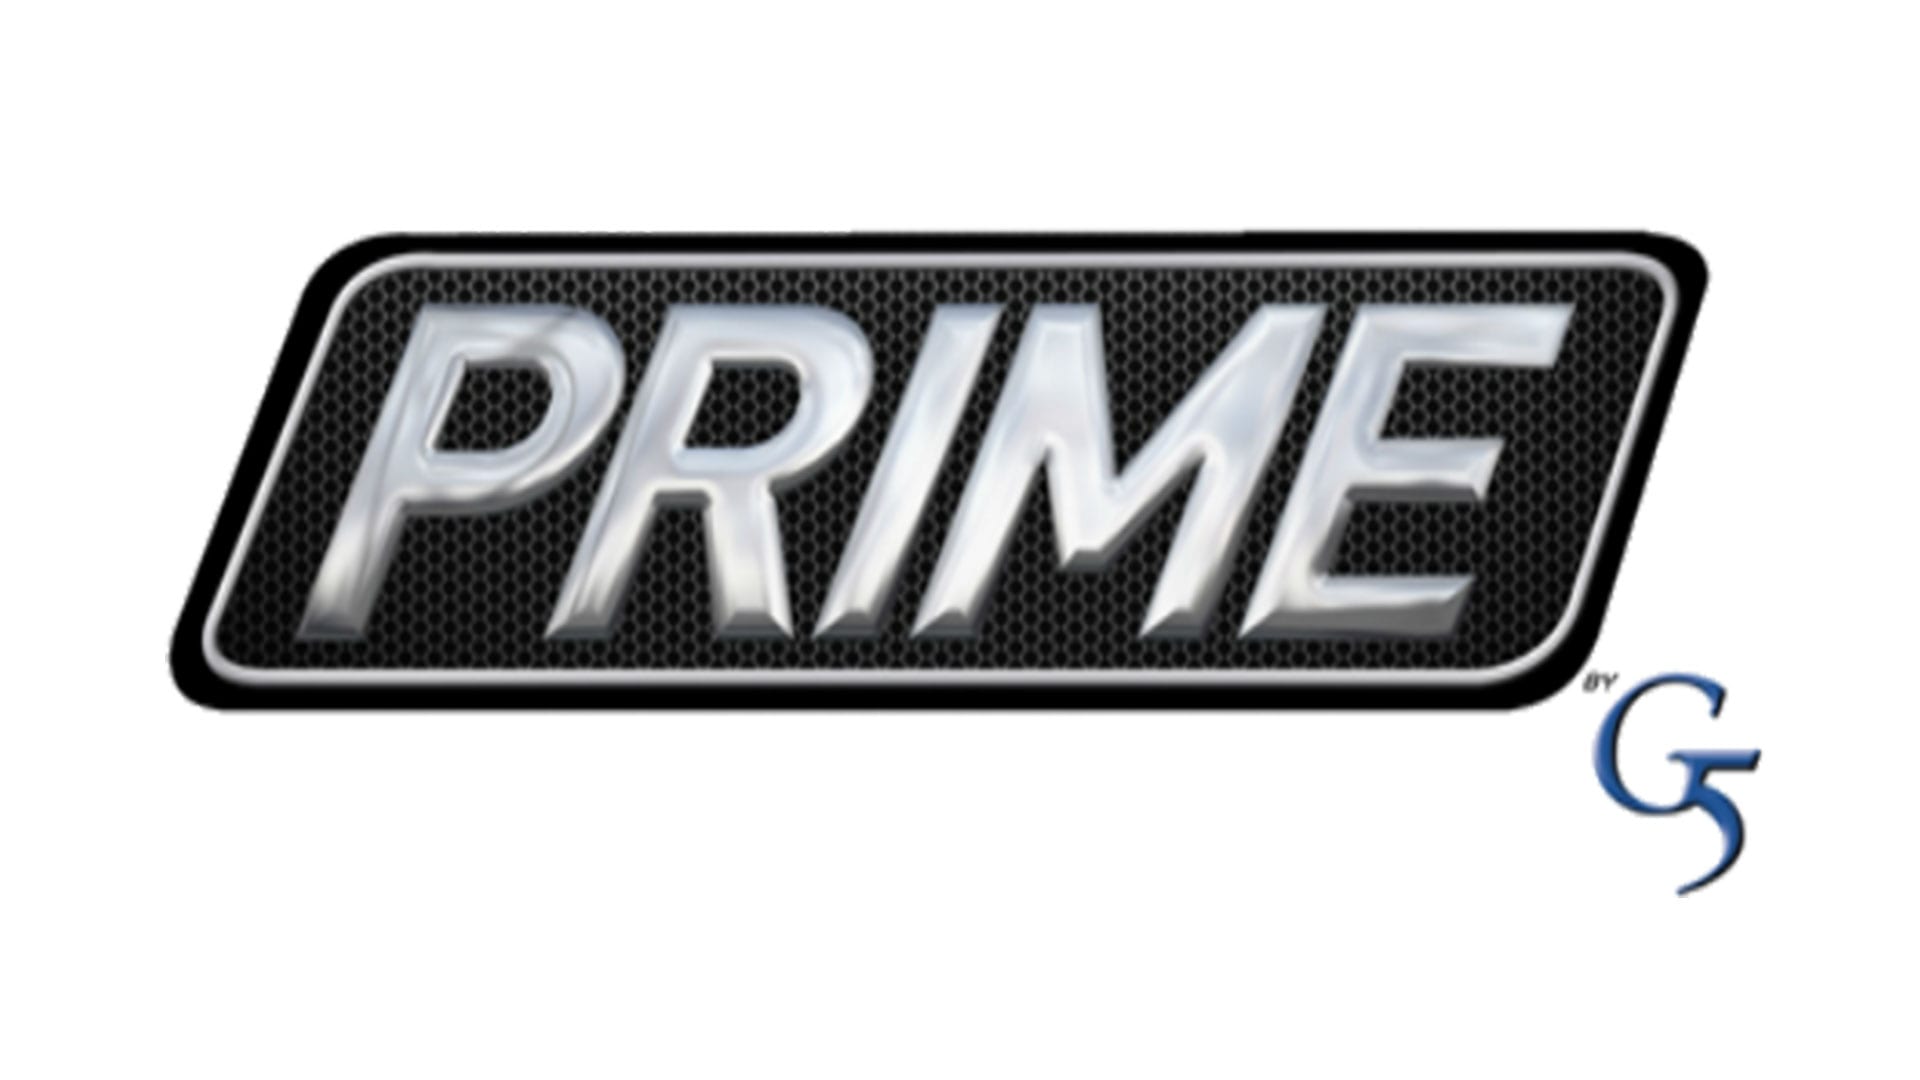 Prime G5